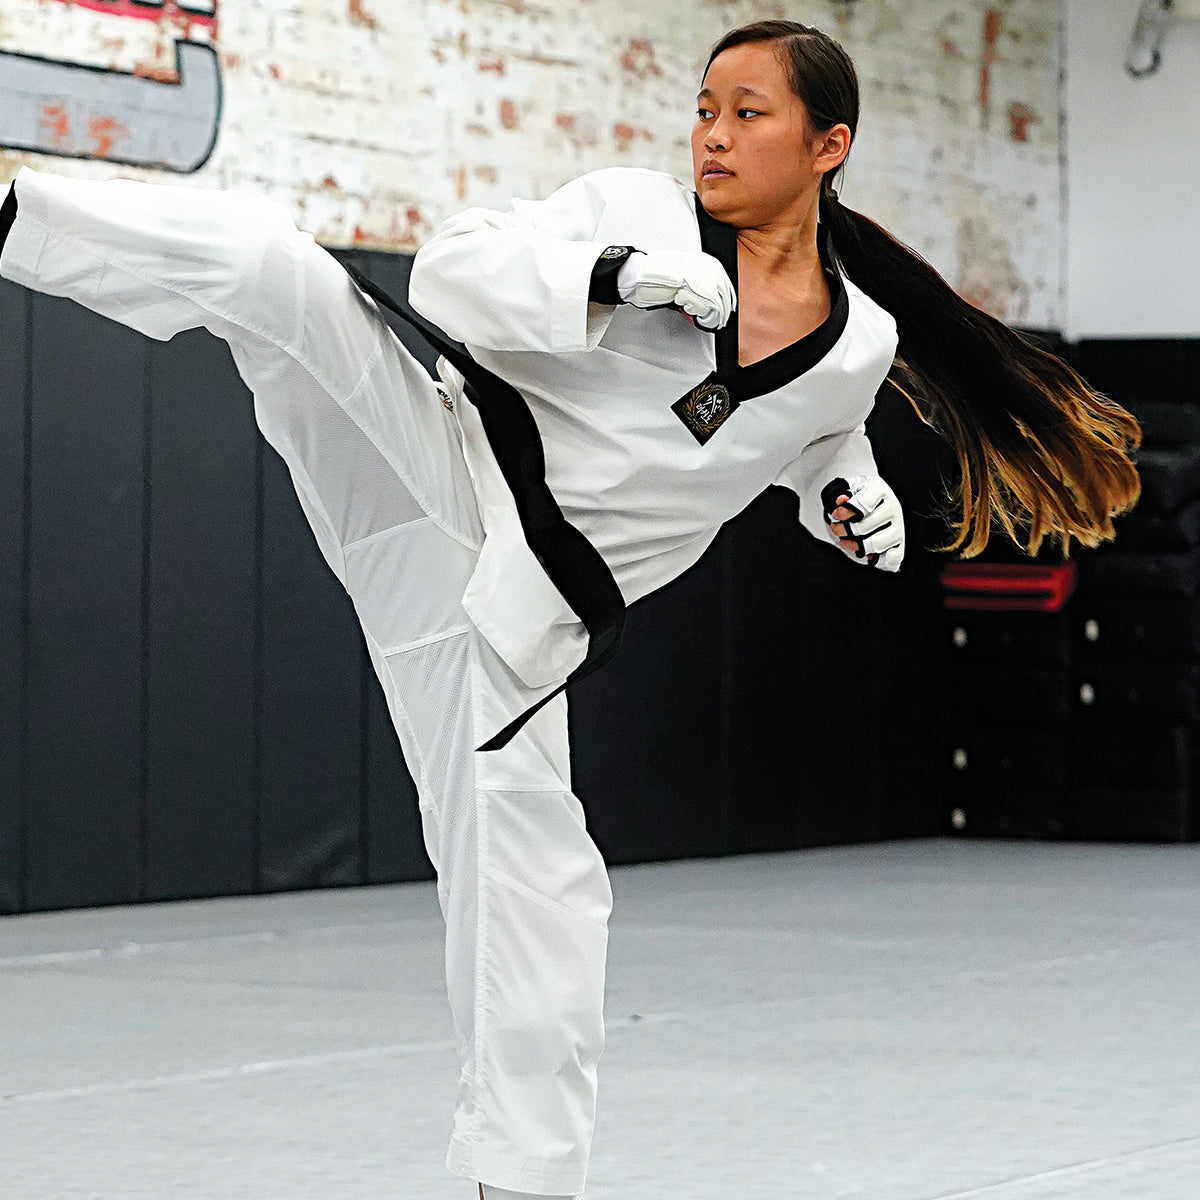 Century Martial Arts, Martial Arts Uniforms & Gear